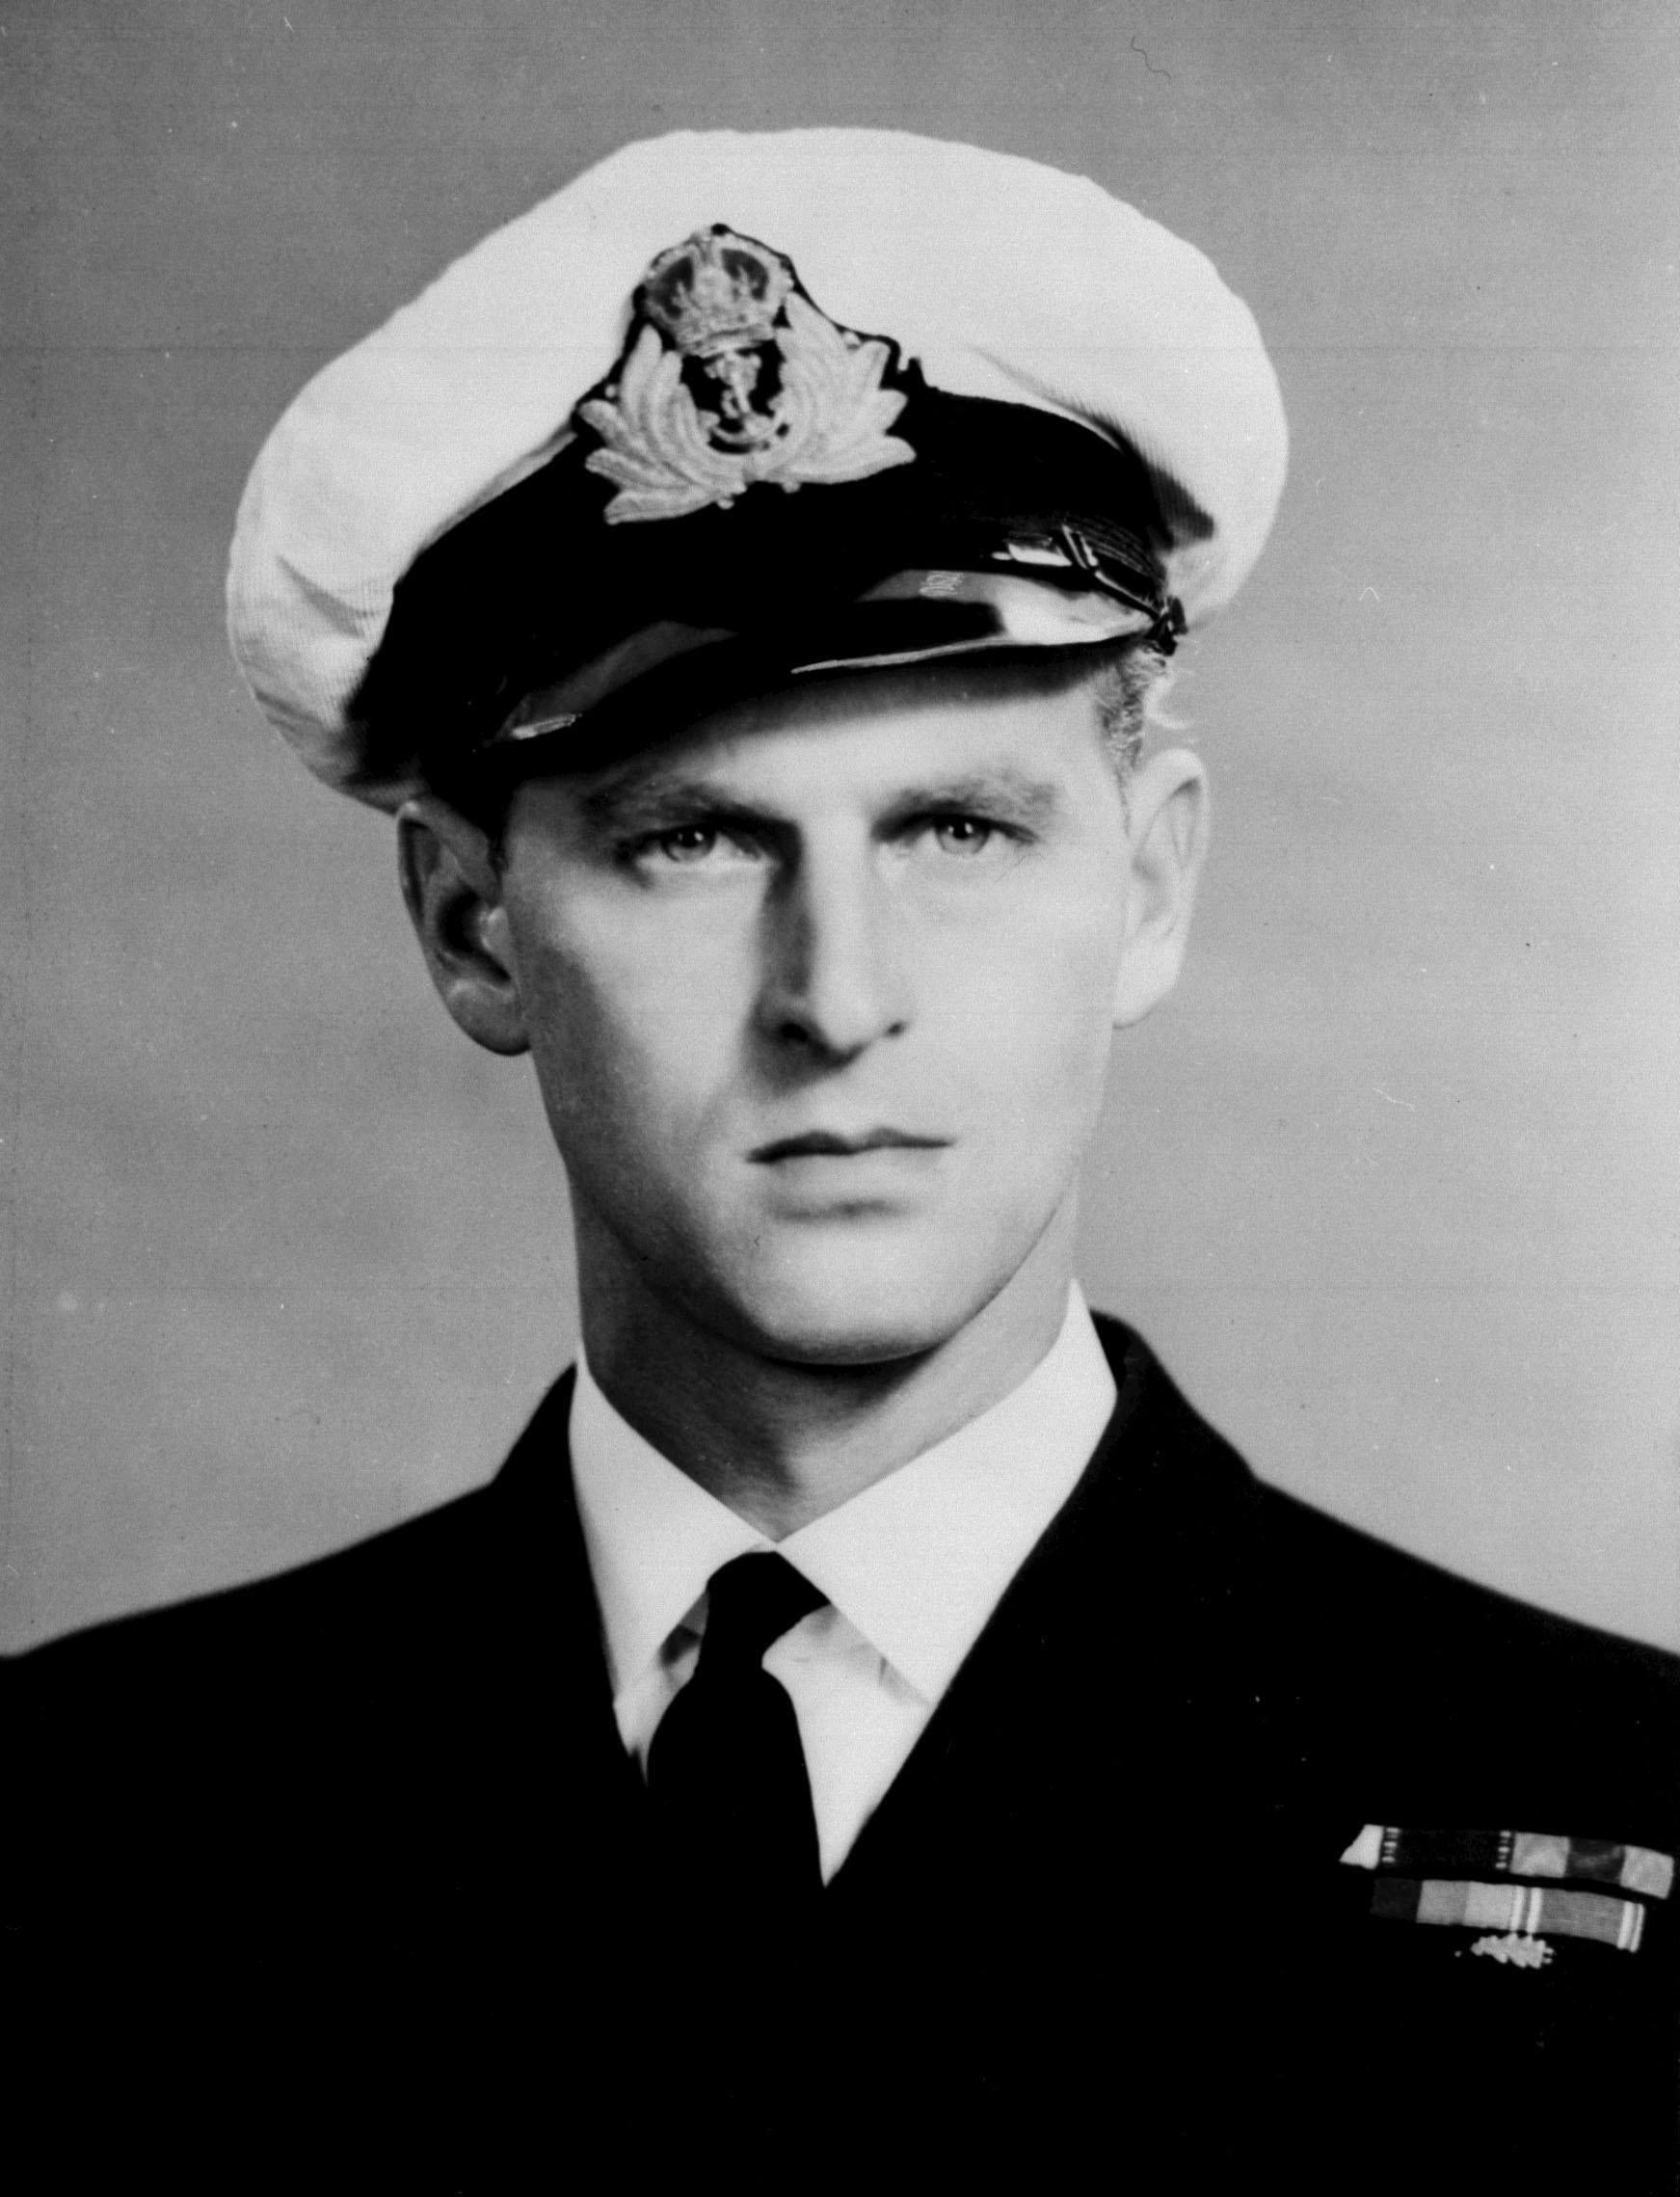 5 December 1946: The Duke of Edinburgh, as a serving officer in the Royal Navy